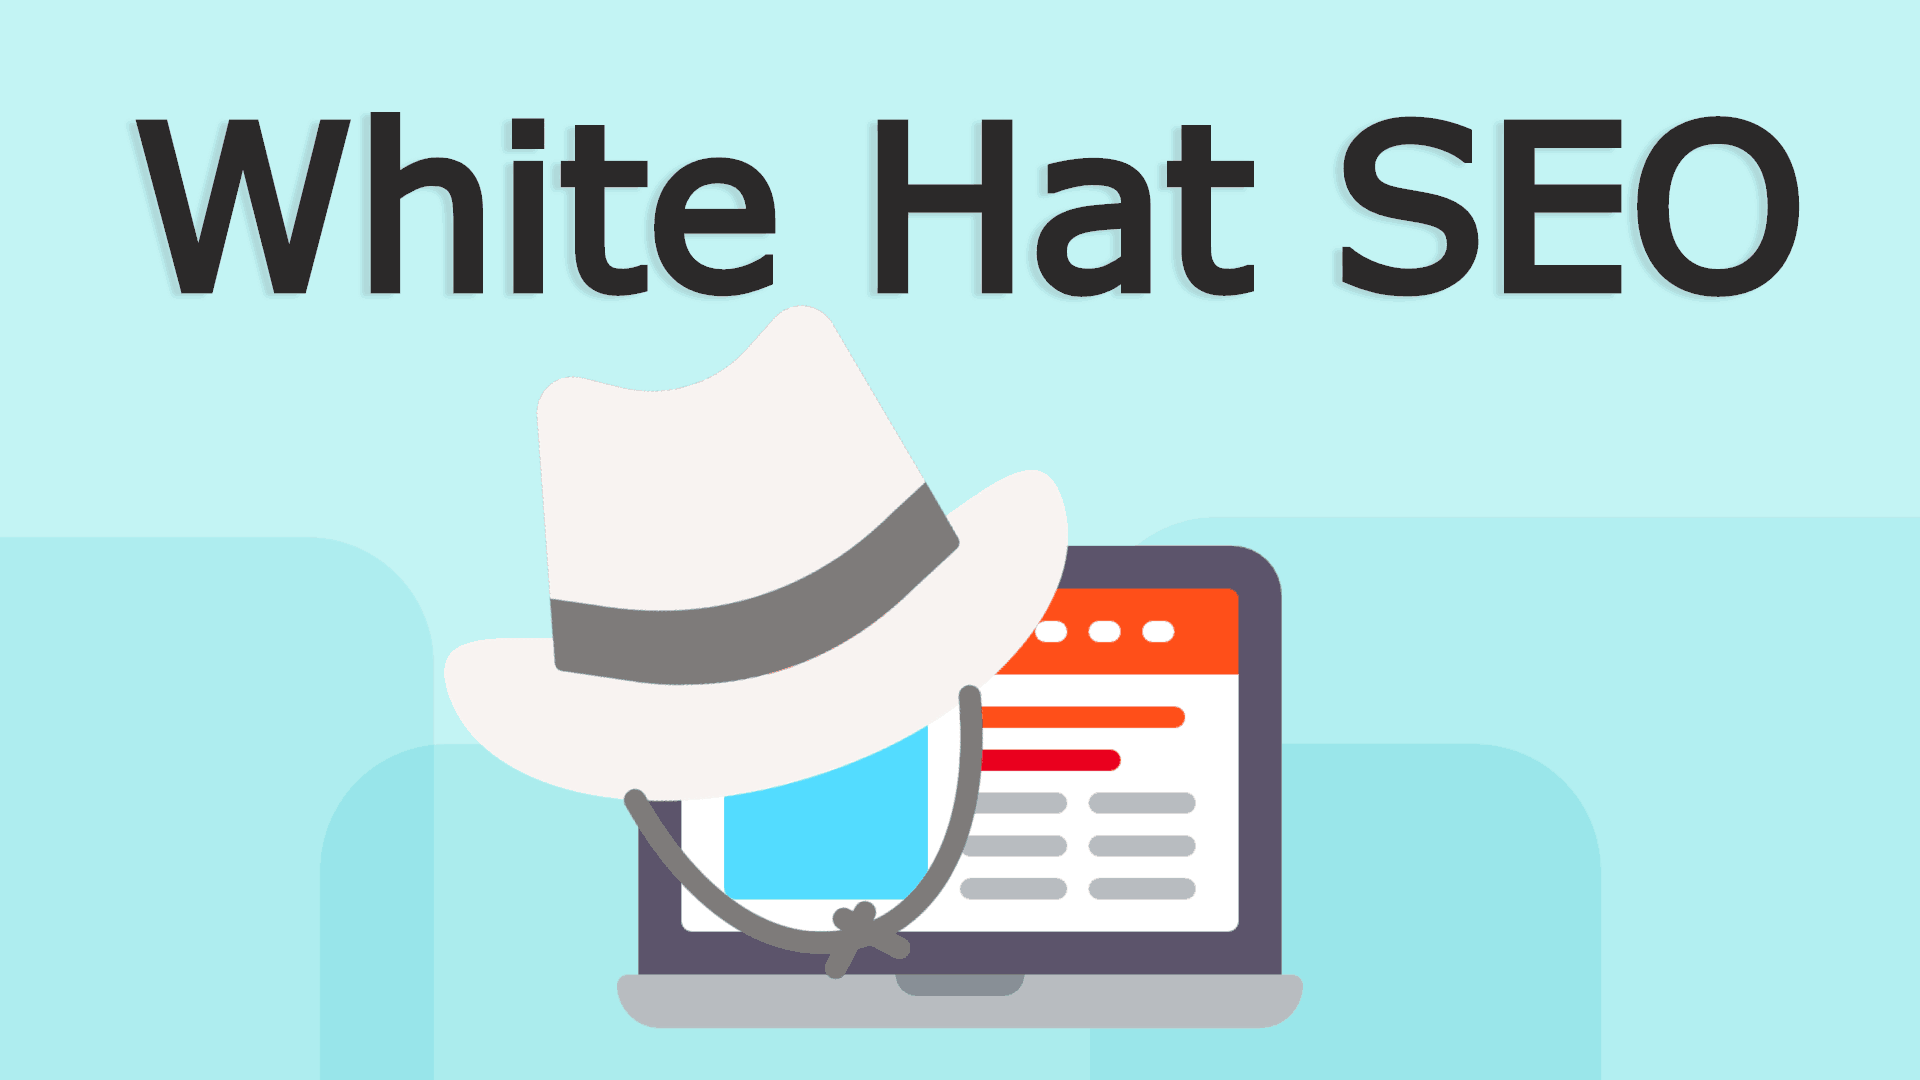 Qu’est-ce que le référencement White Hat SEO?